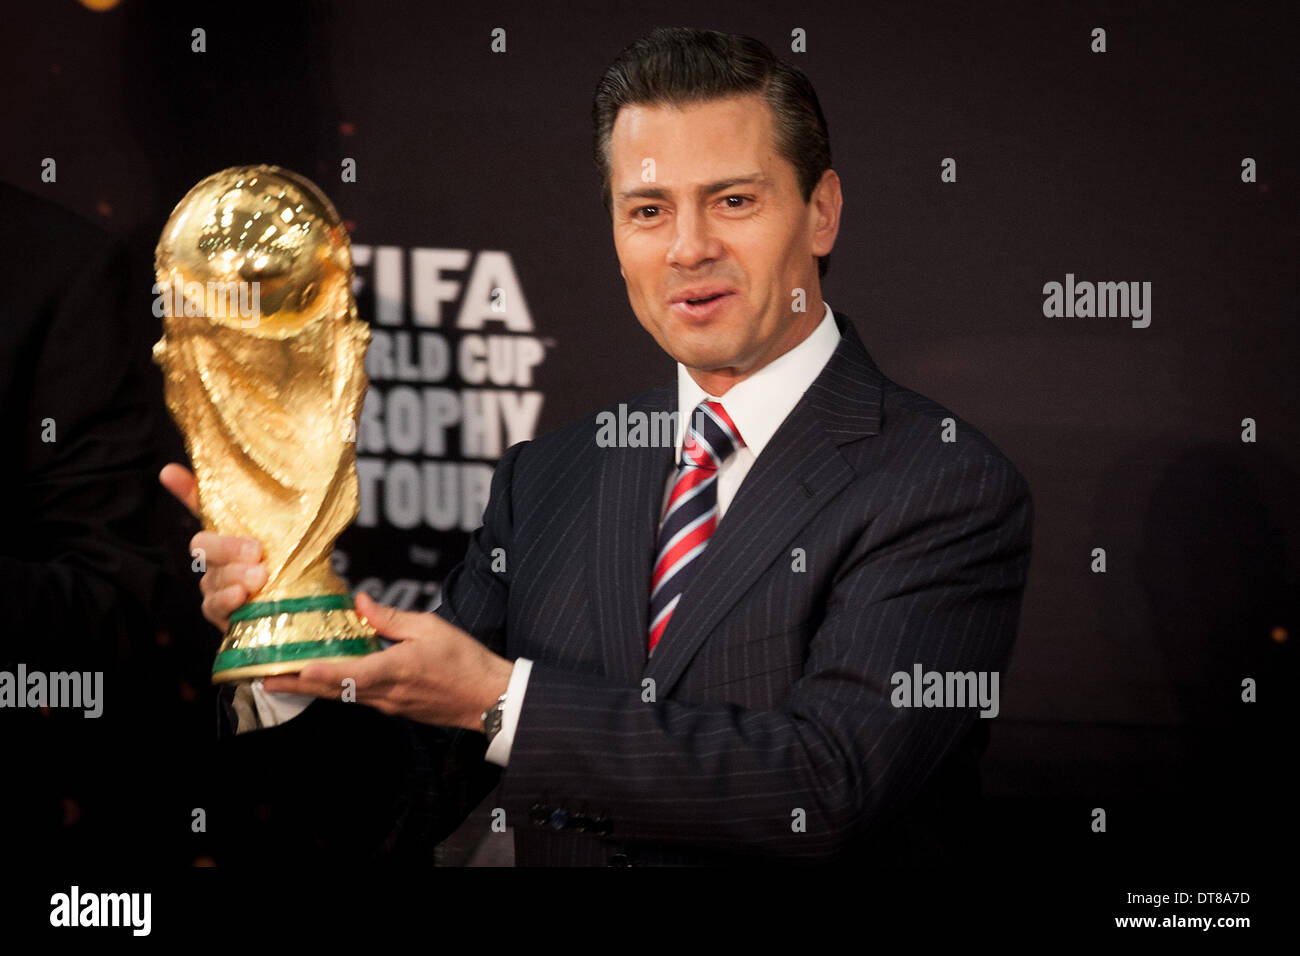 La ville de Mexico, Mexique. Feb 11, 2014. Le Président mexicain Enrique Pena Nieto détient le trophée de la Coupe du Monde de la FIFA, lors d'un événement qui a eu lieu à la résidence officielle de Los Pinos, à Mexico, capitale du Mexique, le 11 février, 2014. © Pedro Mera/Xinhua/Alamy Live News Banque D'Images